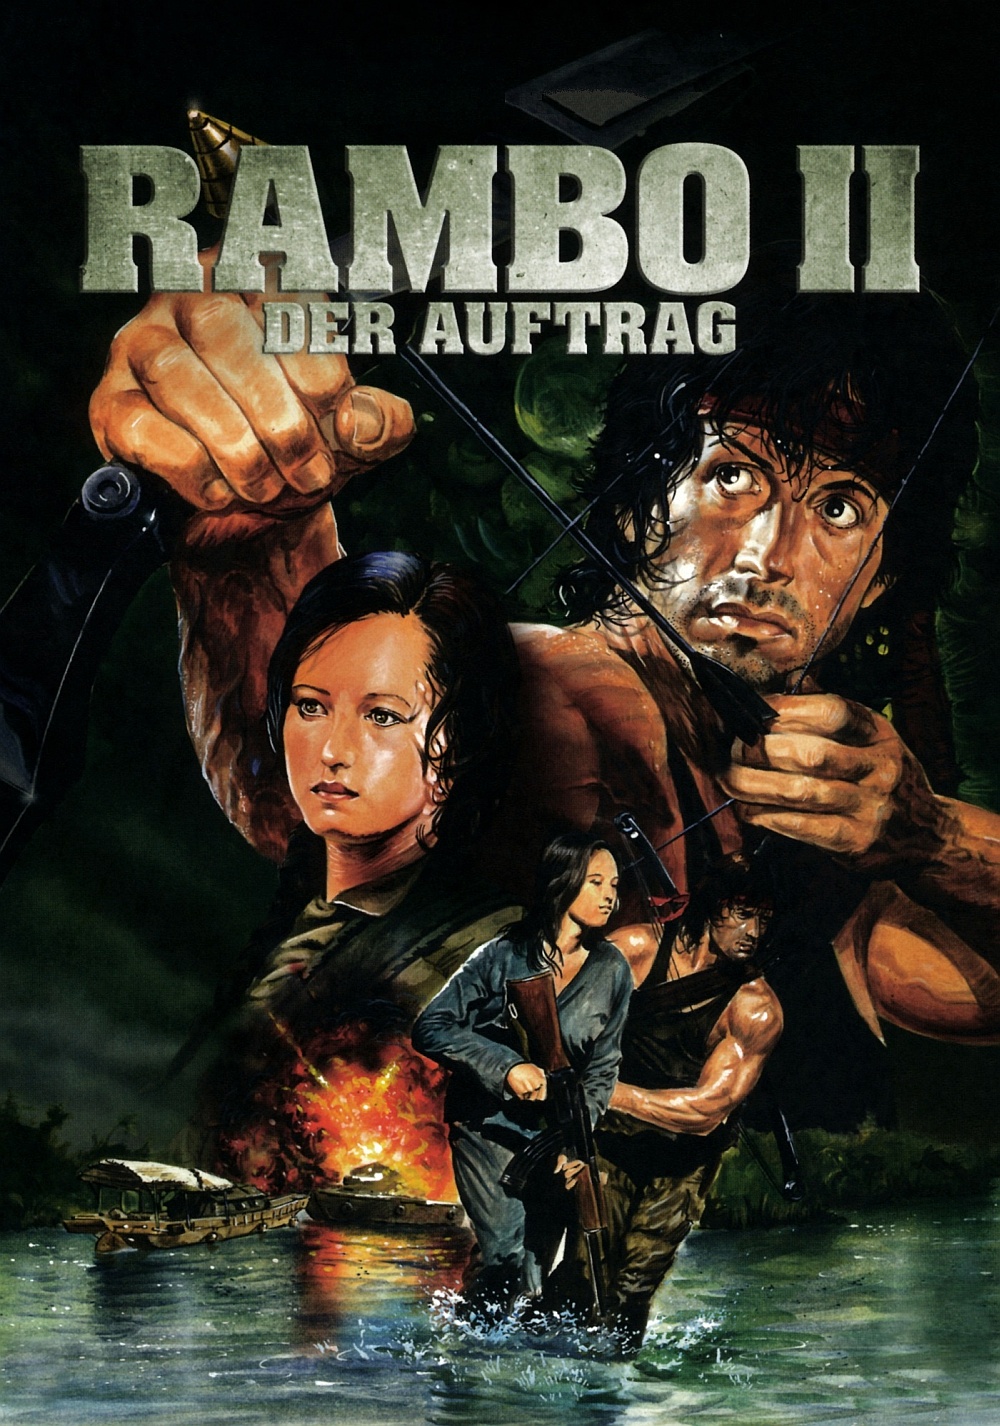 rambo 1 full movie